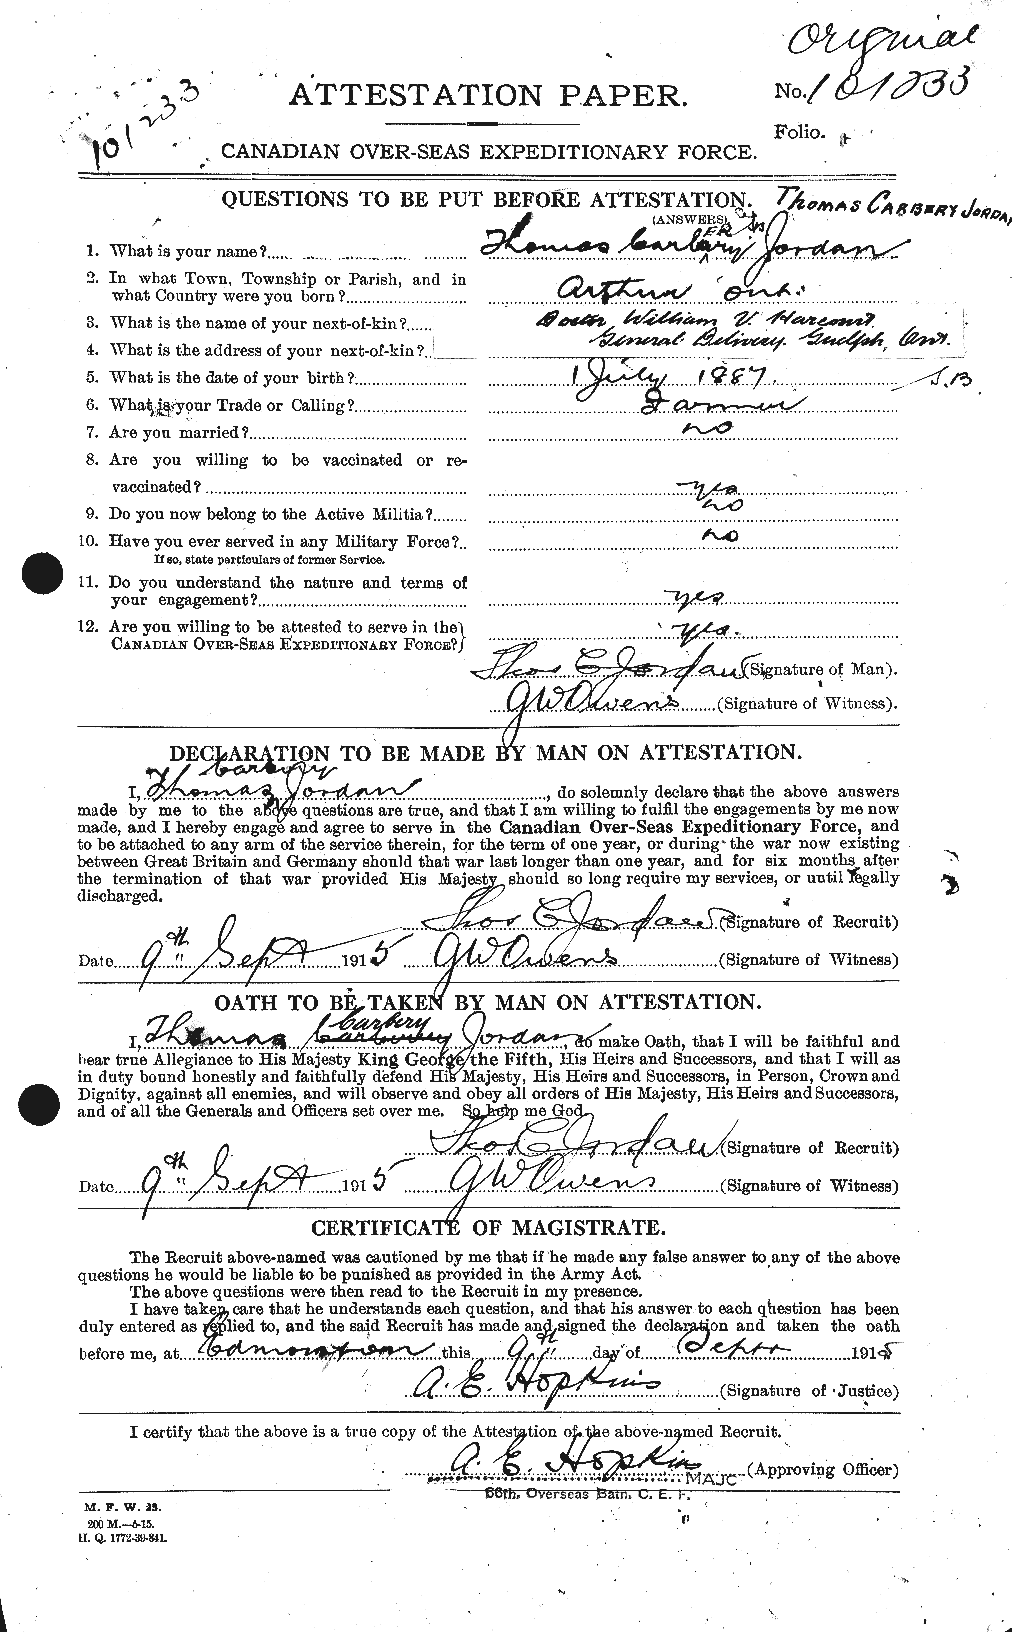 Dossiers du Personnel de la Première Guerre mondiale - CEC 424443a